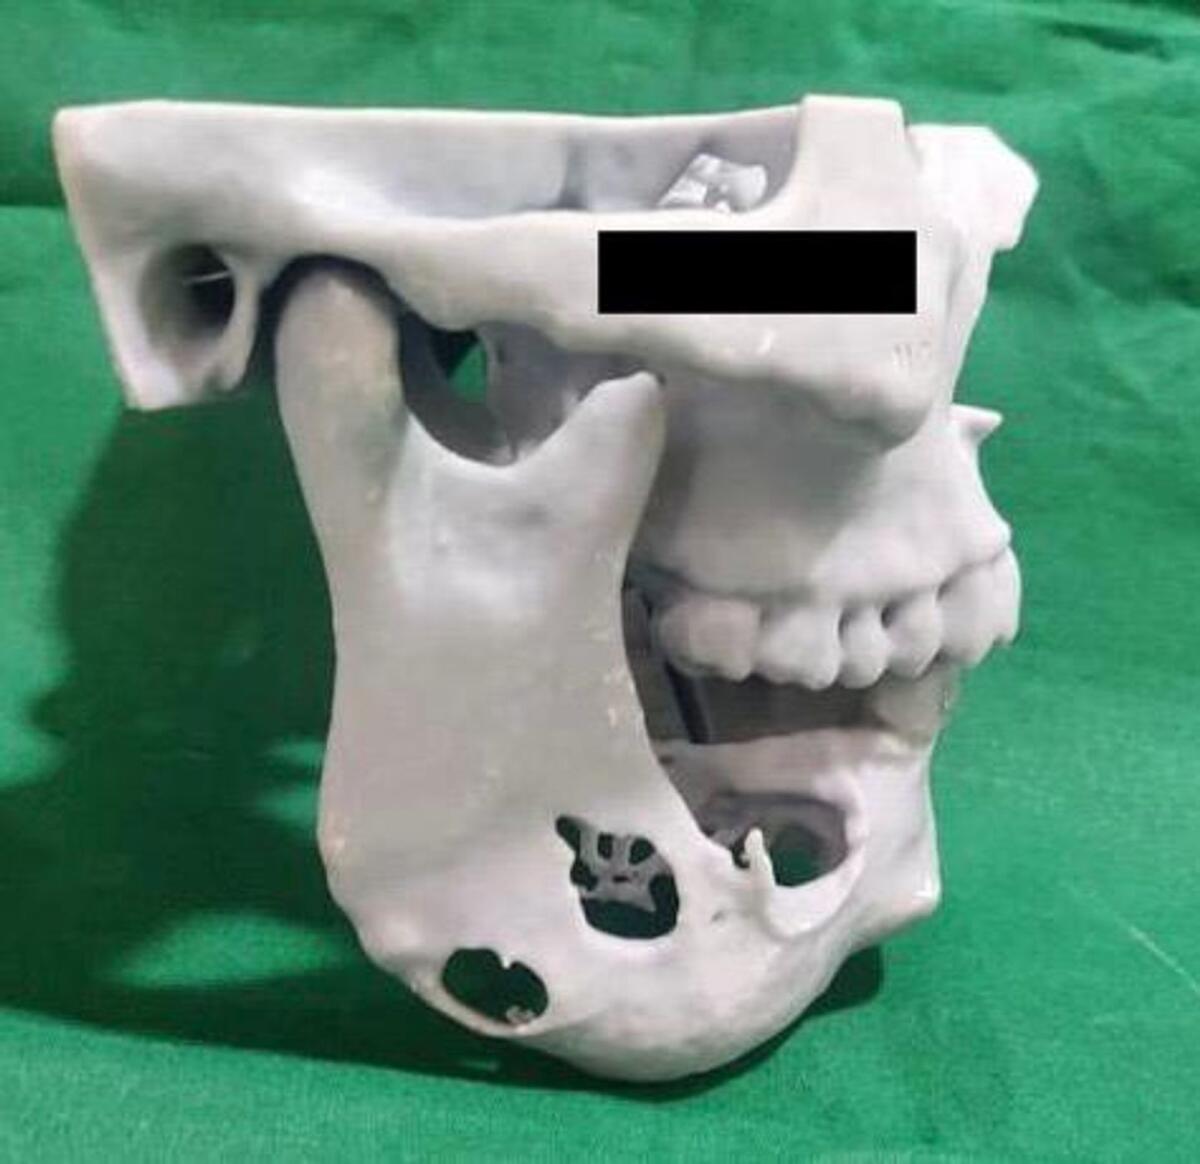 Filipino Expat Gets 3D Printed Jaw in Dubai